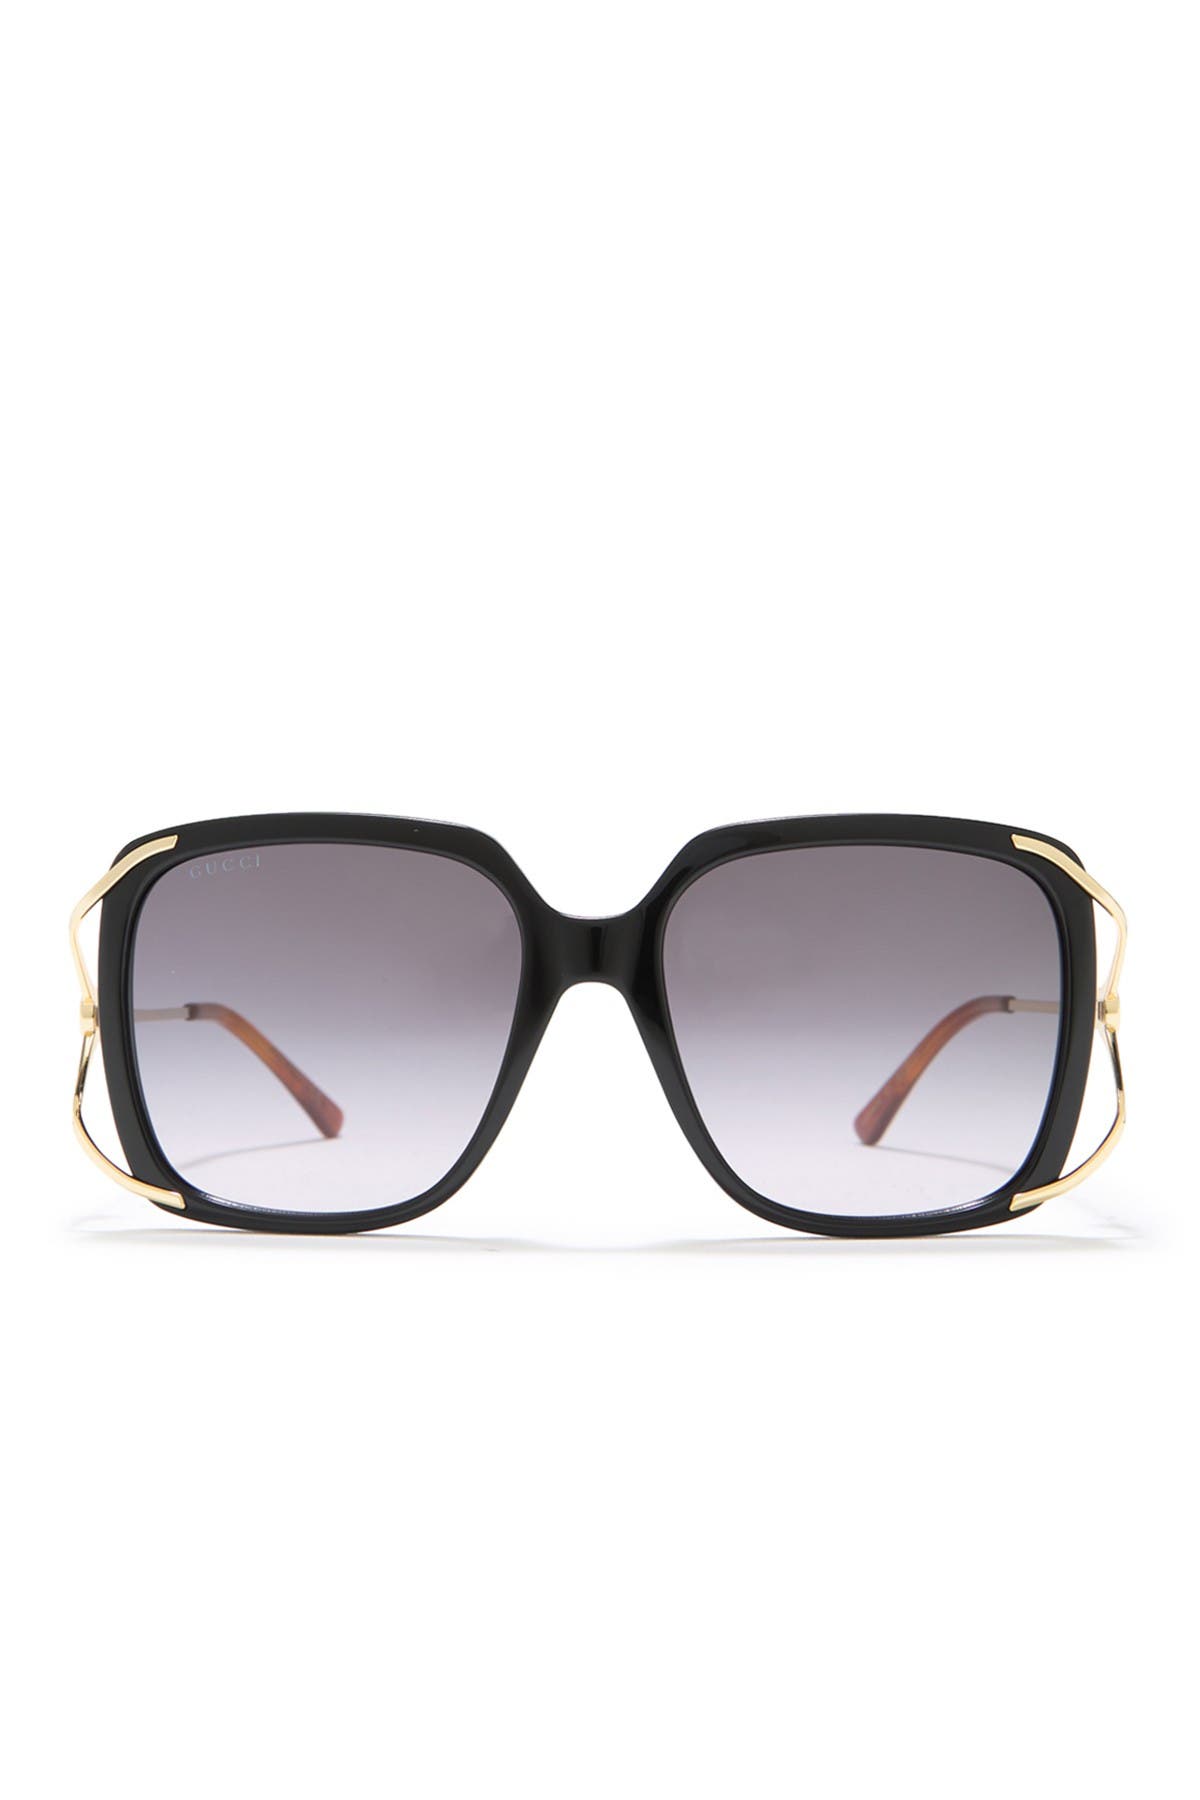 gucci 56mm oversize square sunglasses